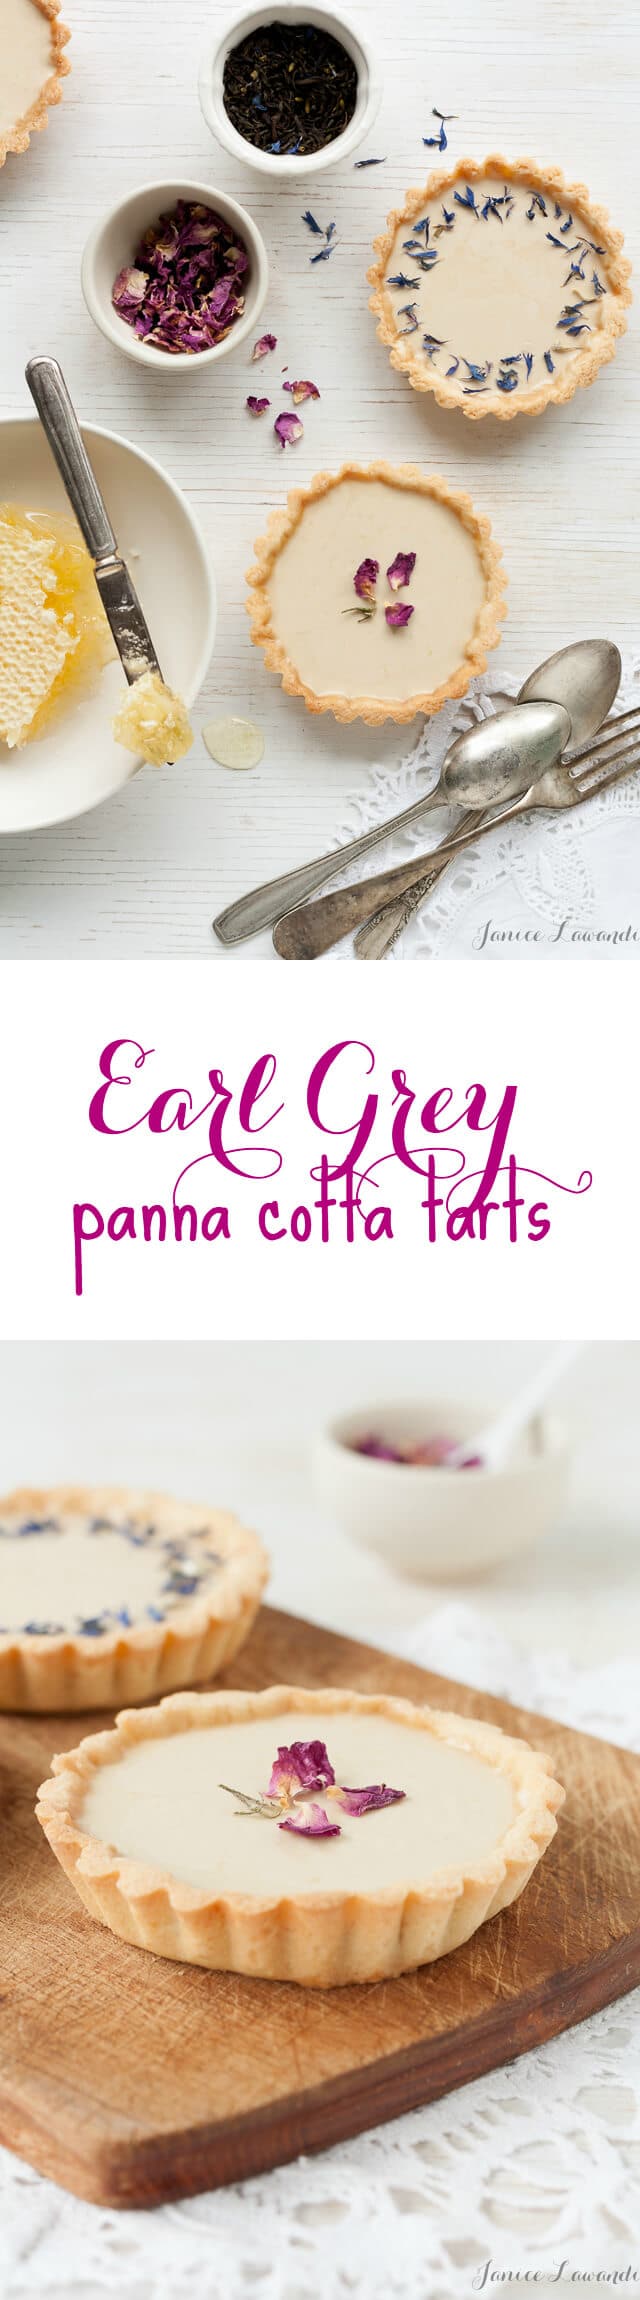 Little Earl Grey panna cotta tarts